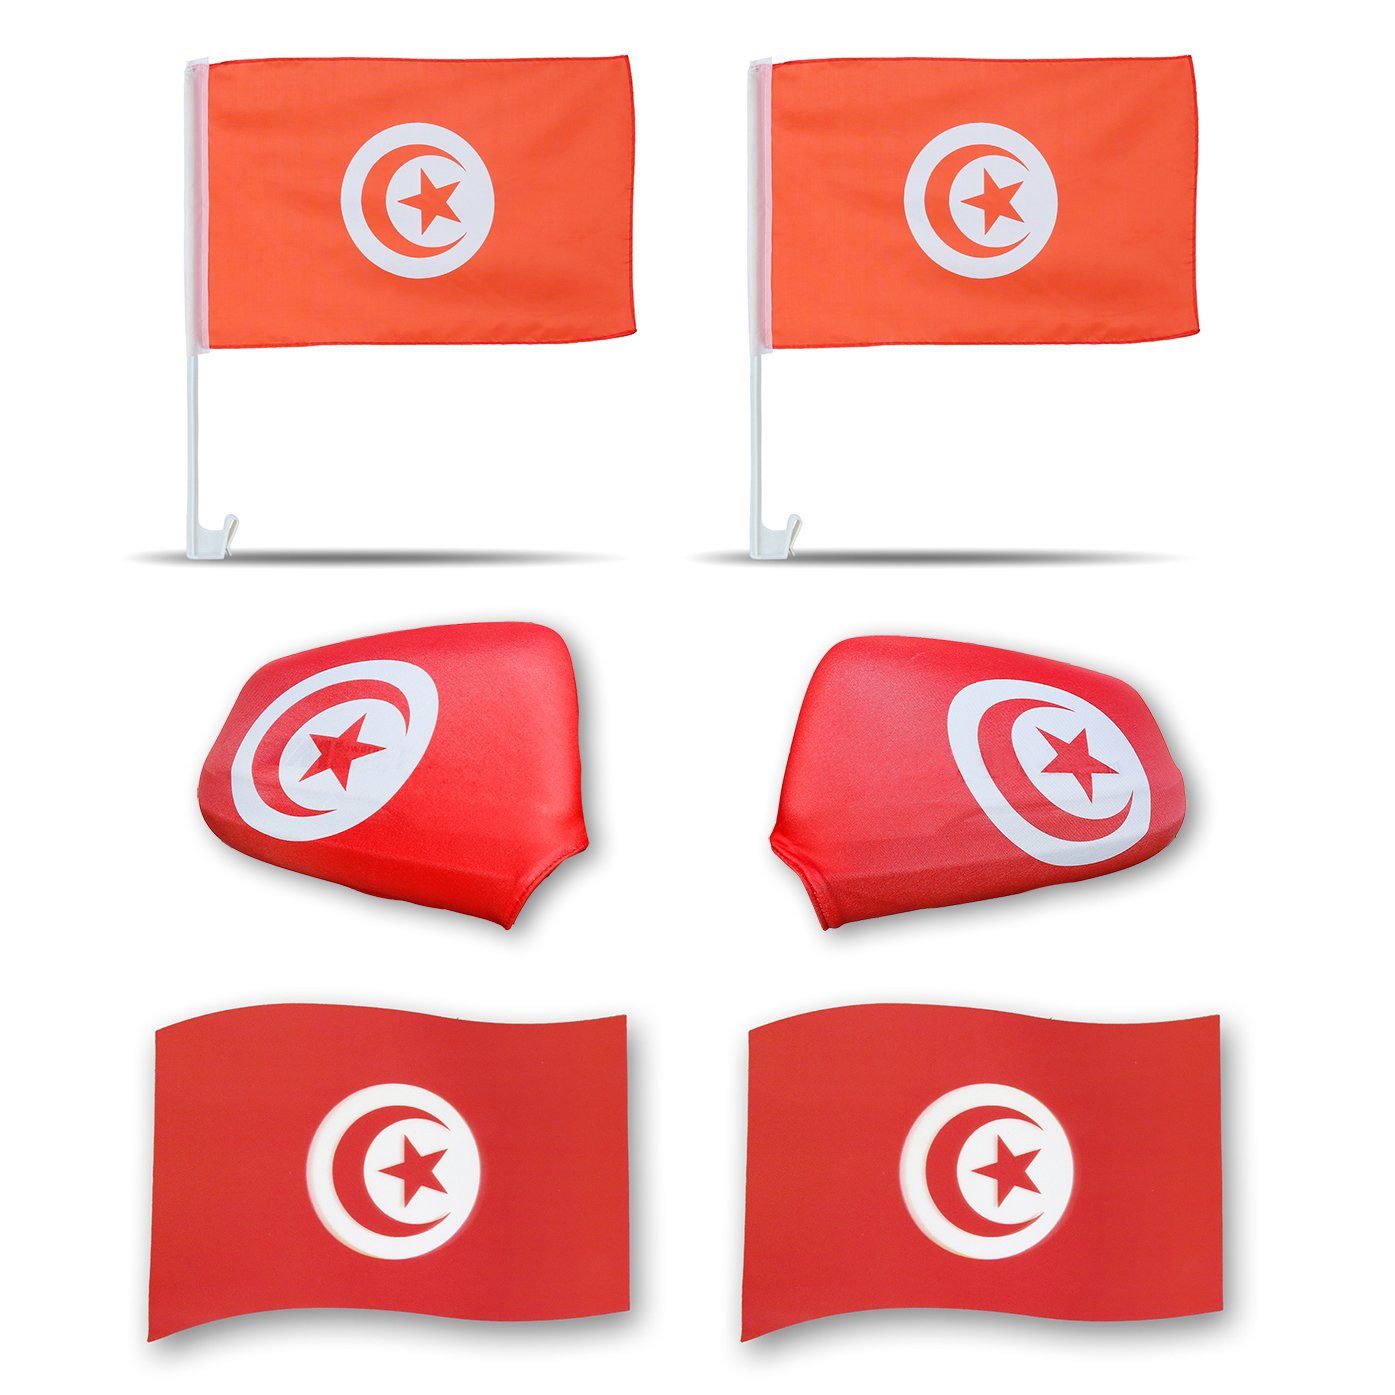 Sonia Originelli Fahne Fanpaket "Tunesien" 3D Magnet Außenspiegel Fußball Tunisia Flaggen, 3D-Effekt Magnete